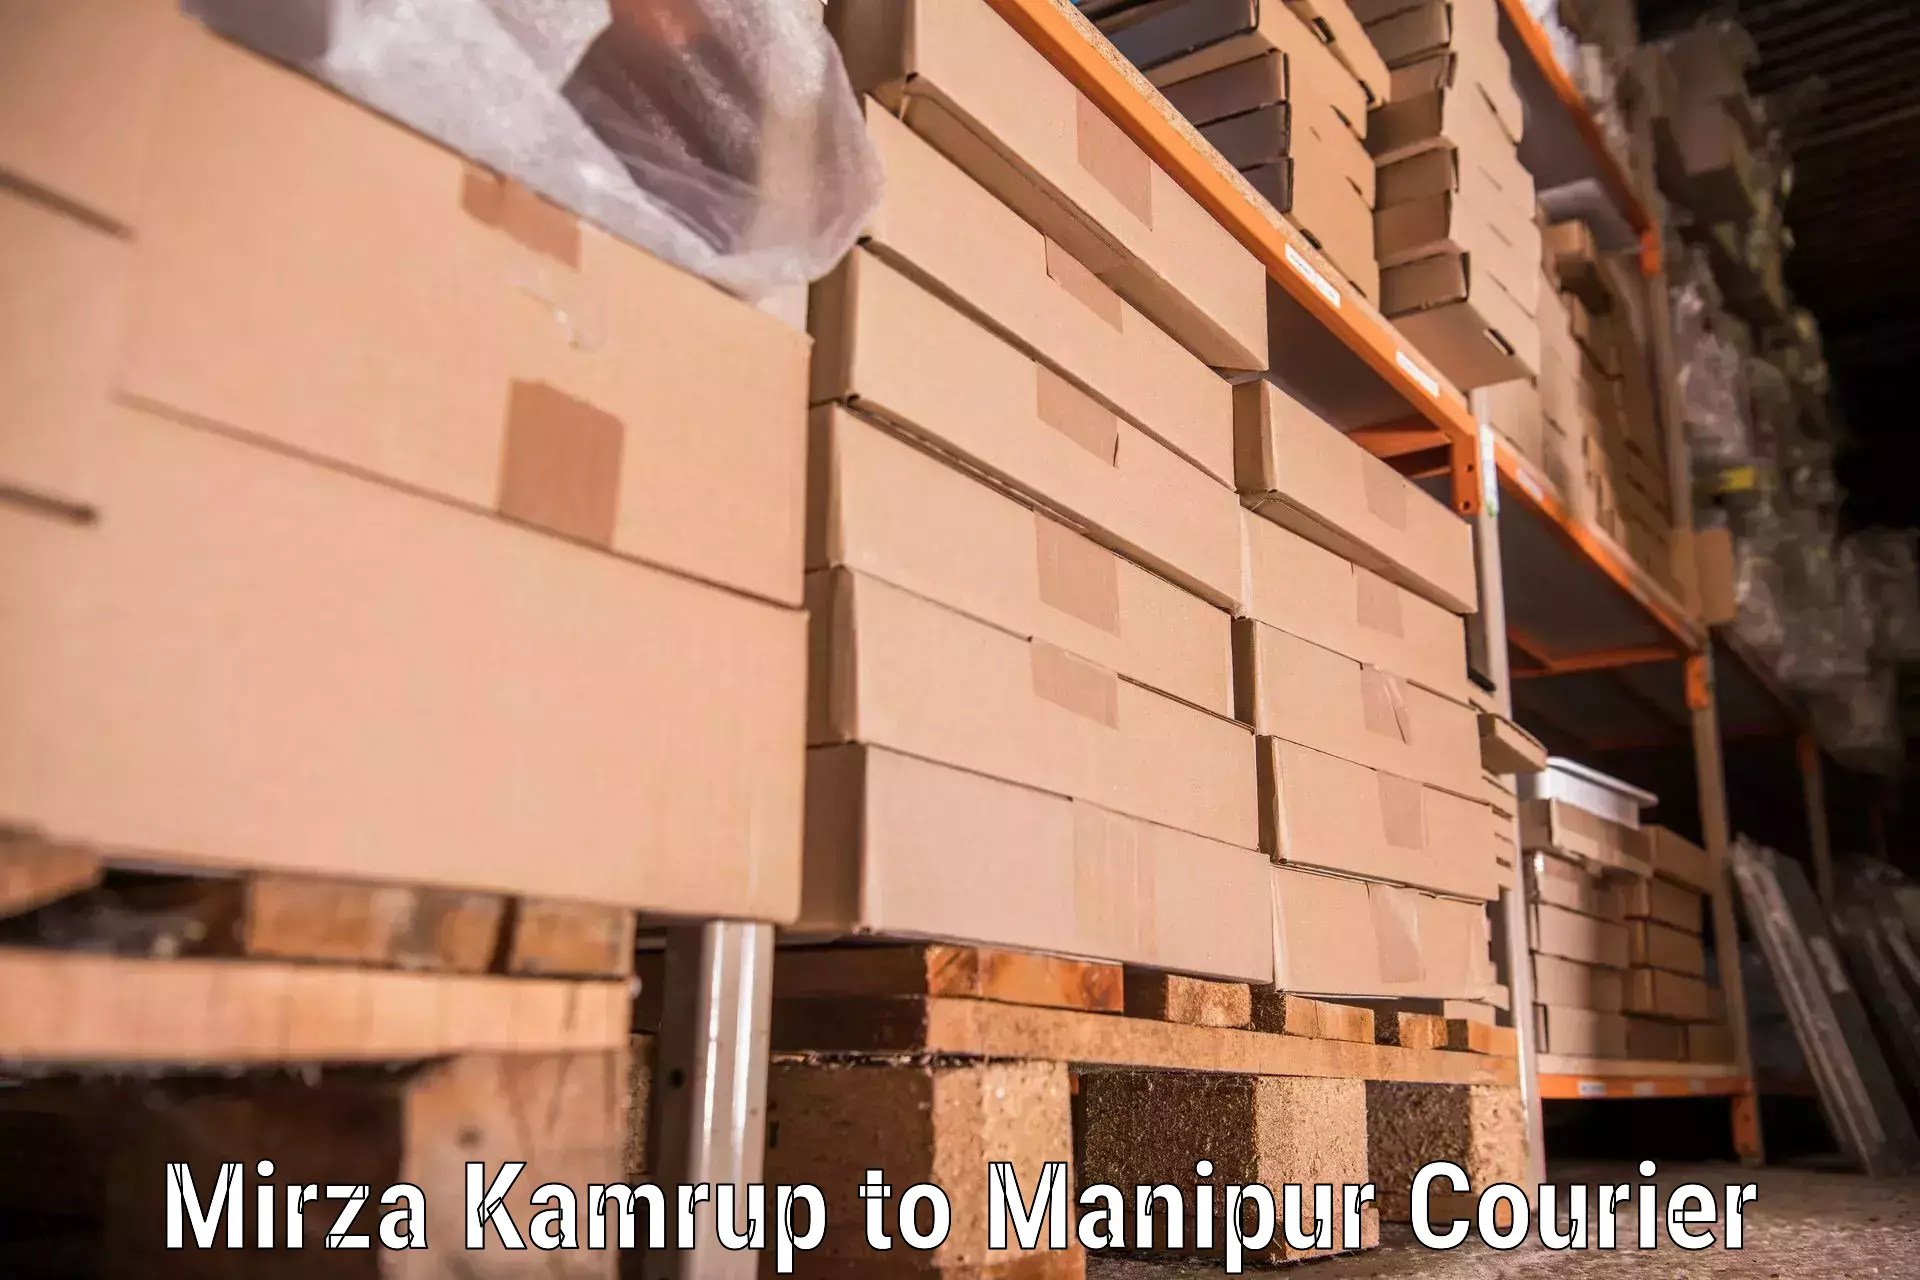 Moving and storage services Mirza Kamrup to Senapati